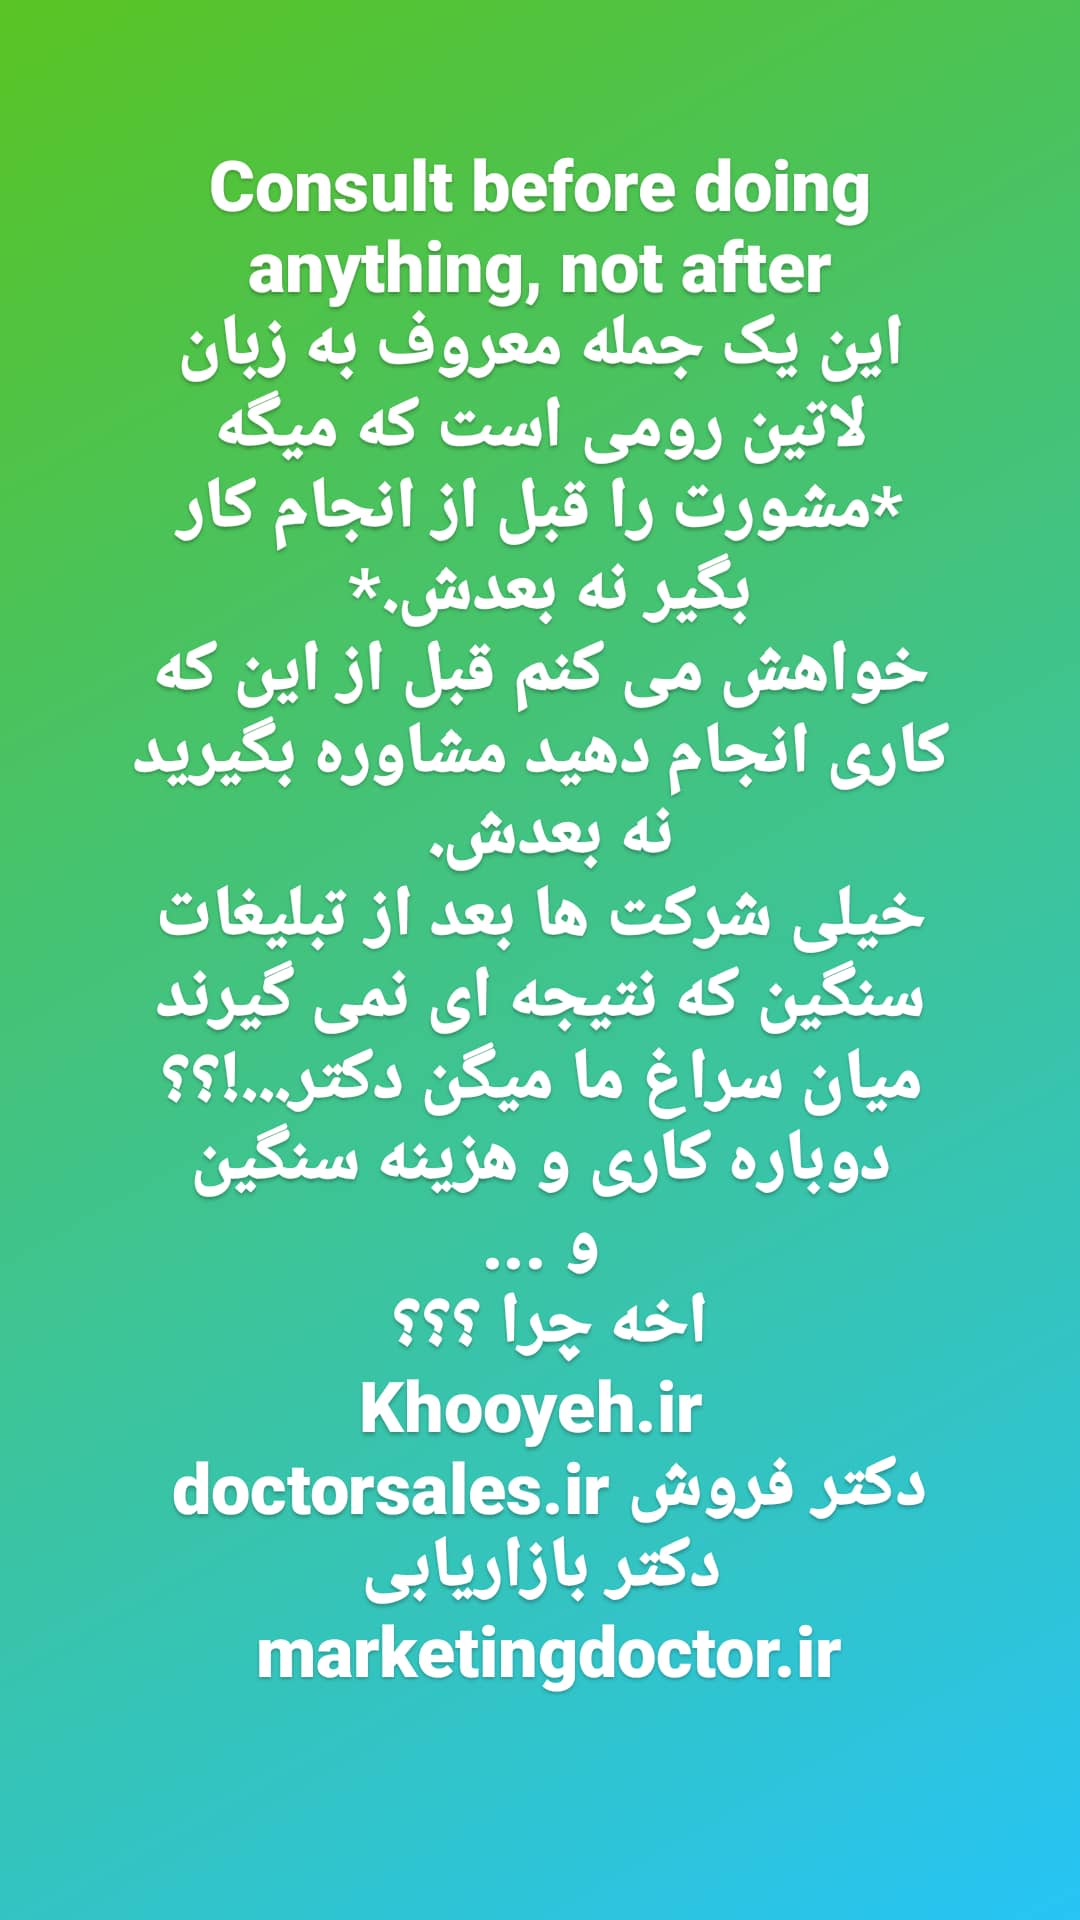 علی خویه مشاور مربی کوچ ومنتور کسب و کار مدیریت فروش بازاریابی برند khooyeh.ir 